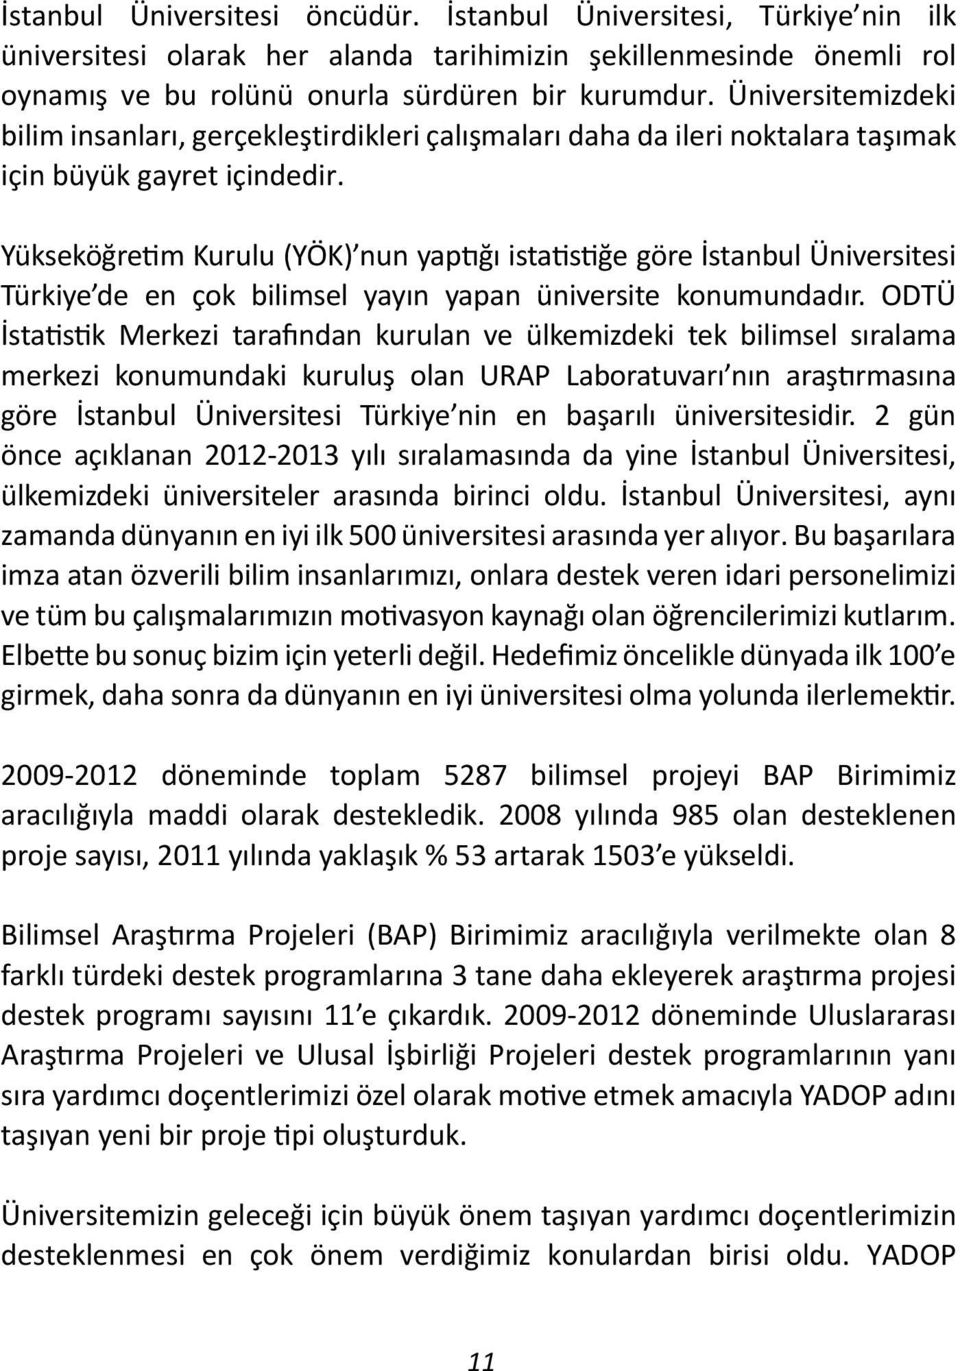 Yükseköğretim Kurulu (YÖK) nun yaptığı istatistiğe göre İstanbul Üniversitesi Türkiye de en çok bilimsel yayın yapan üniversite konumundadır.